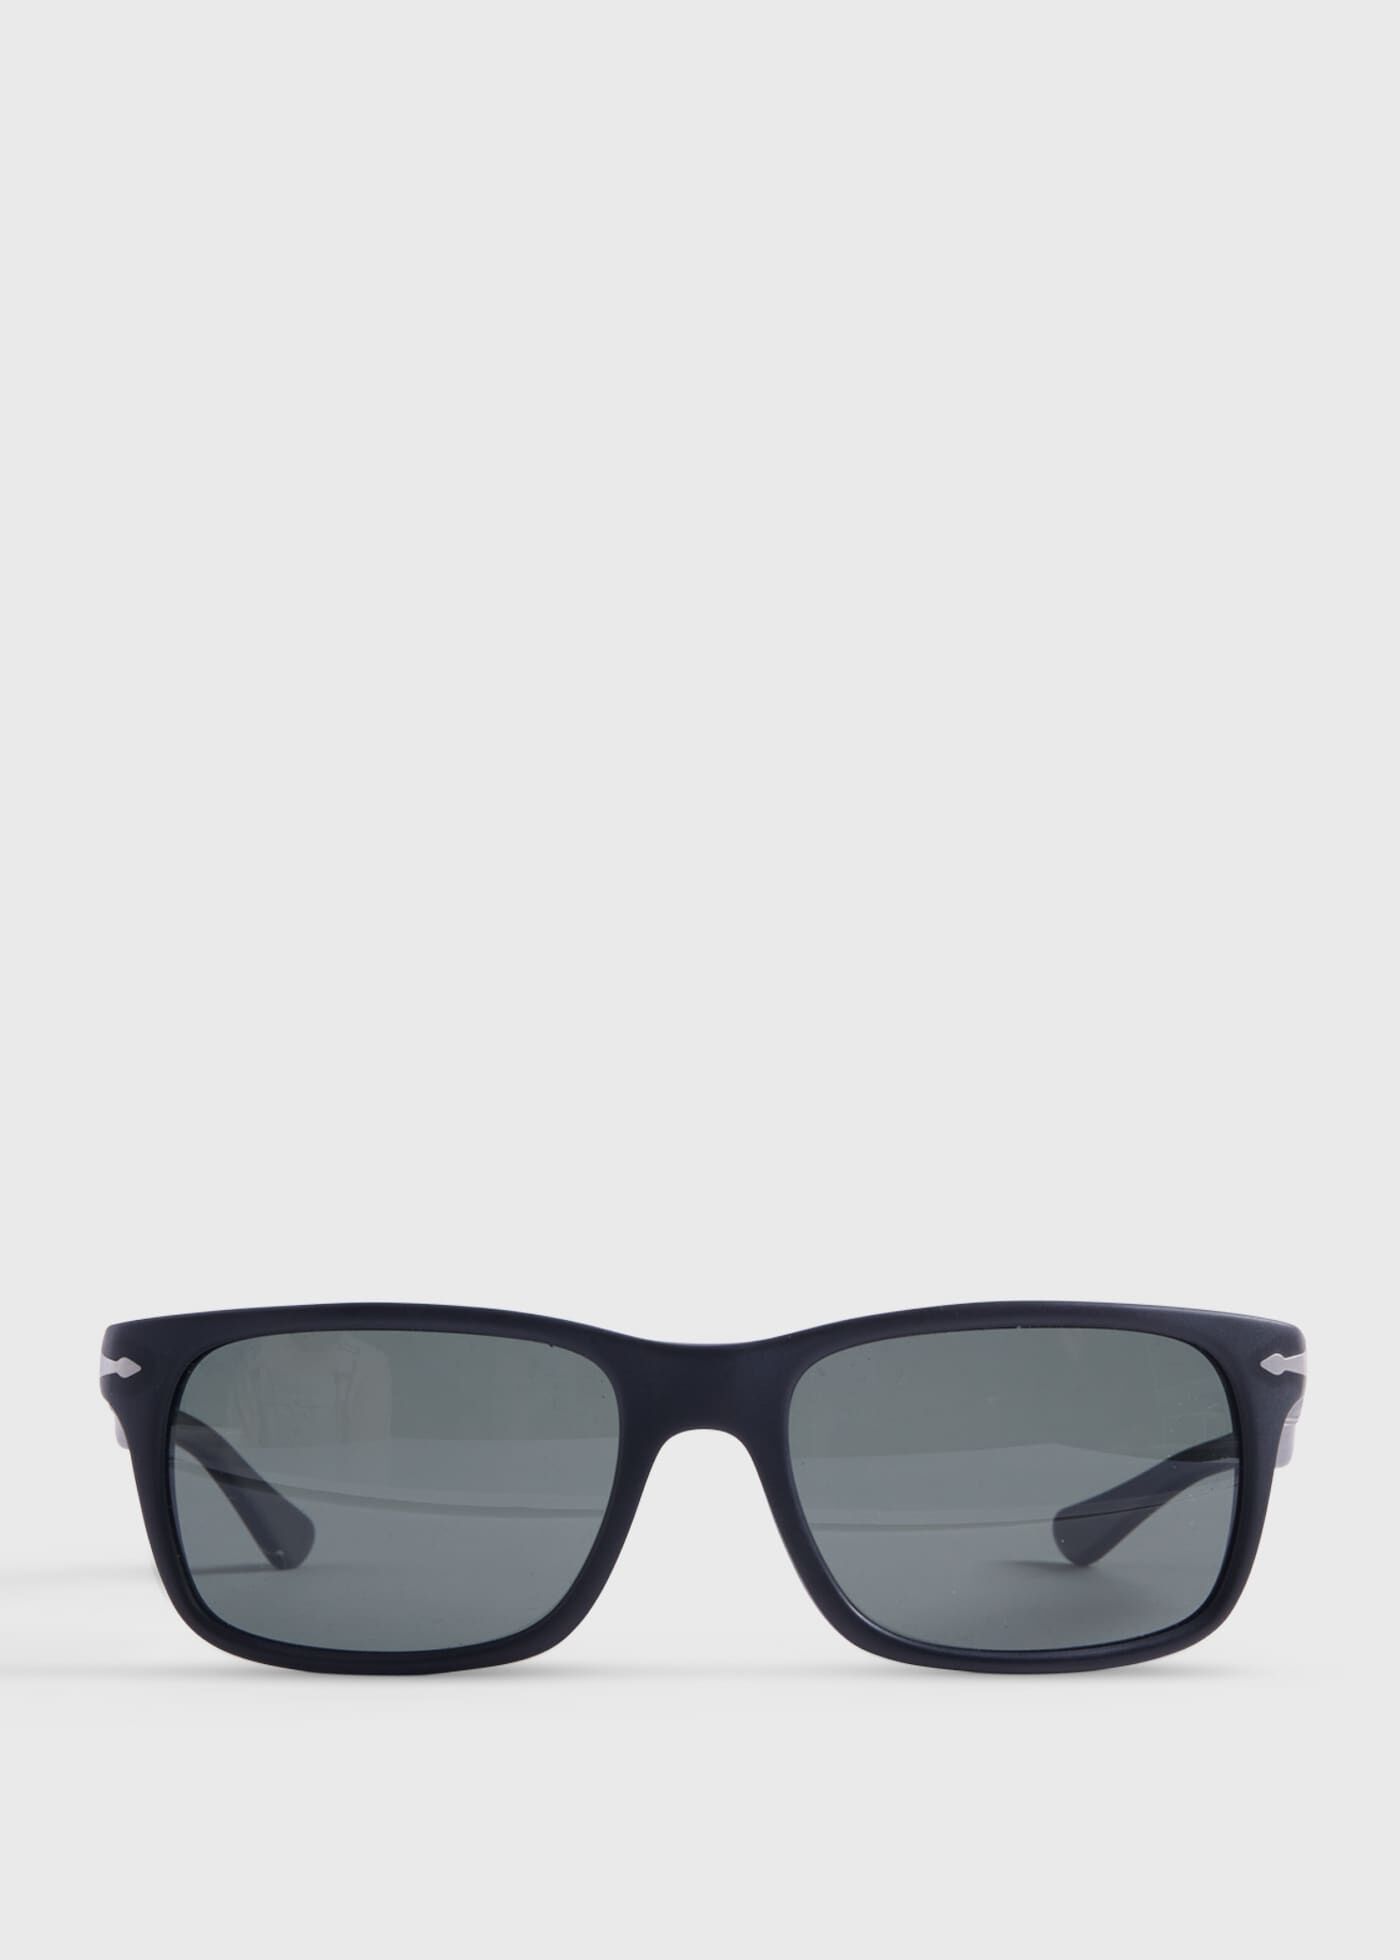 Michael Kors MK 1025 MK1025 Havana Sunglasses | Designer Glasses